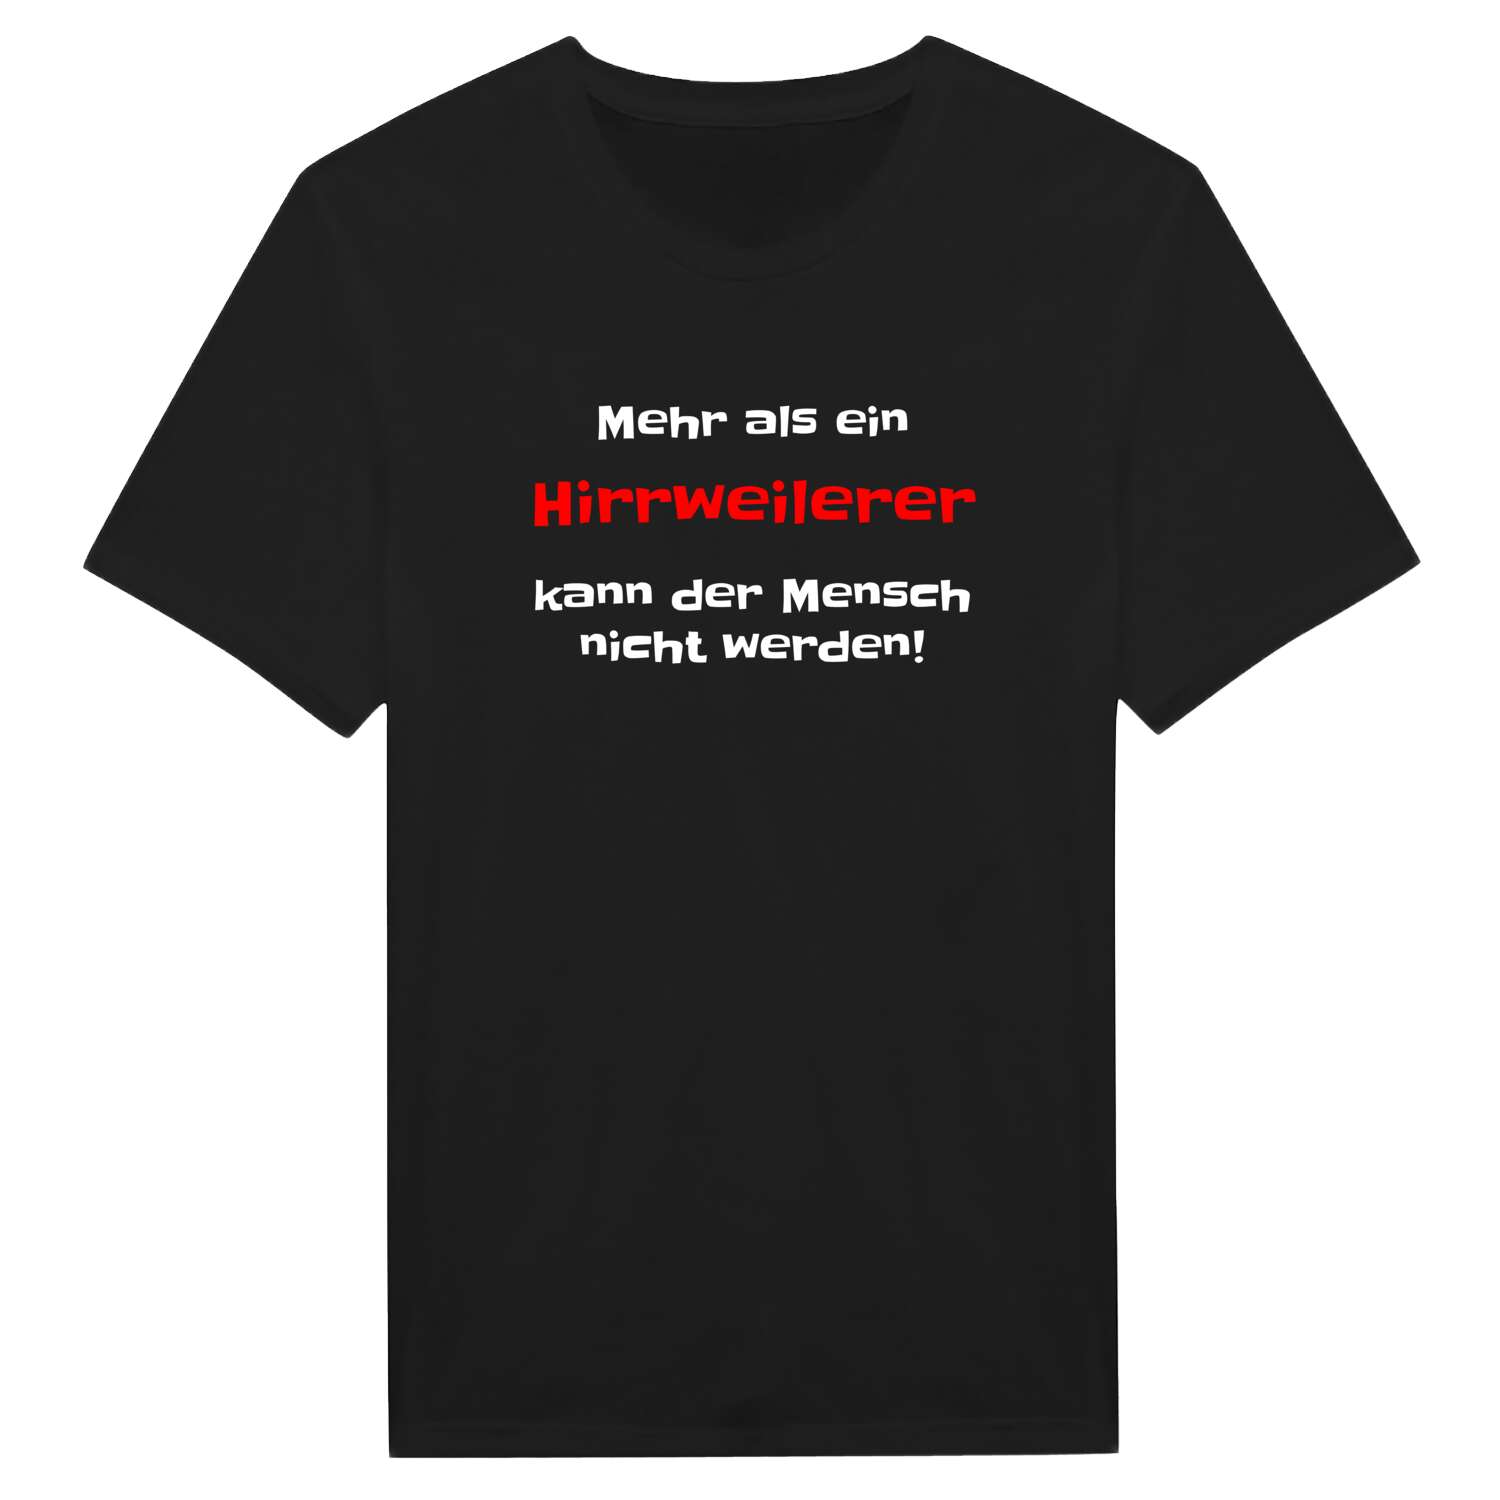 Hirrweiler T-Shirt »Mehr als ein«